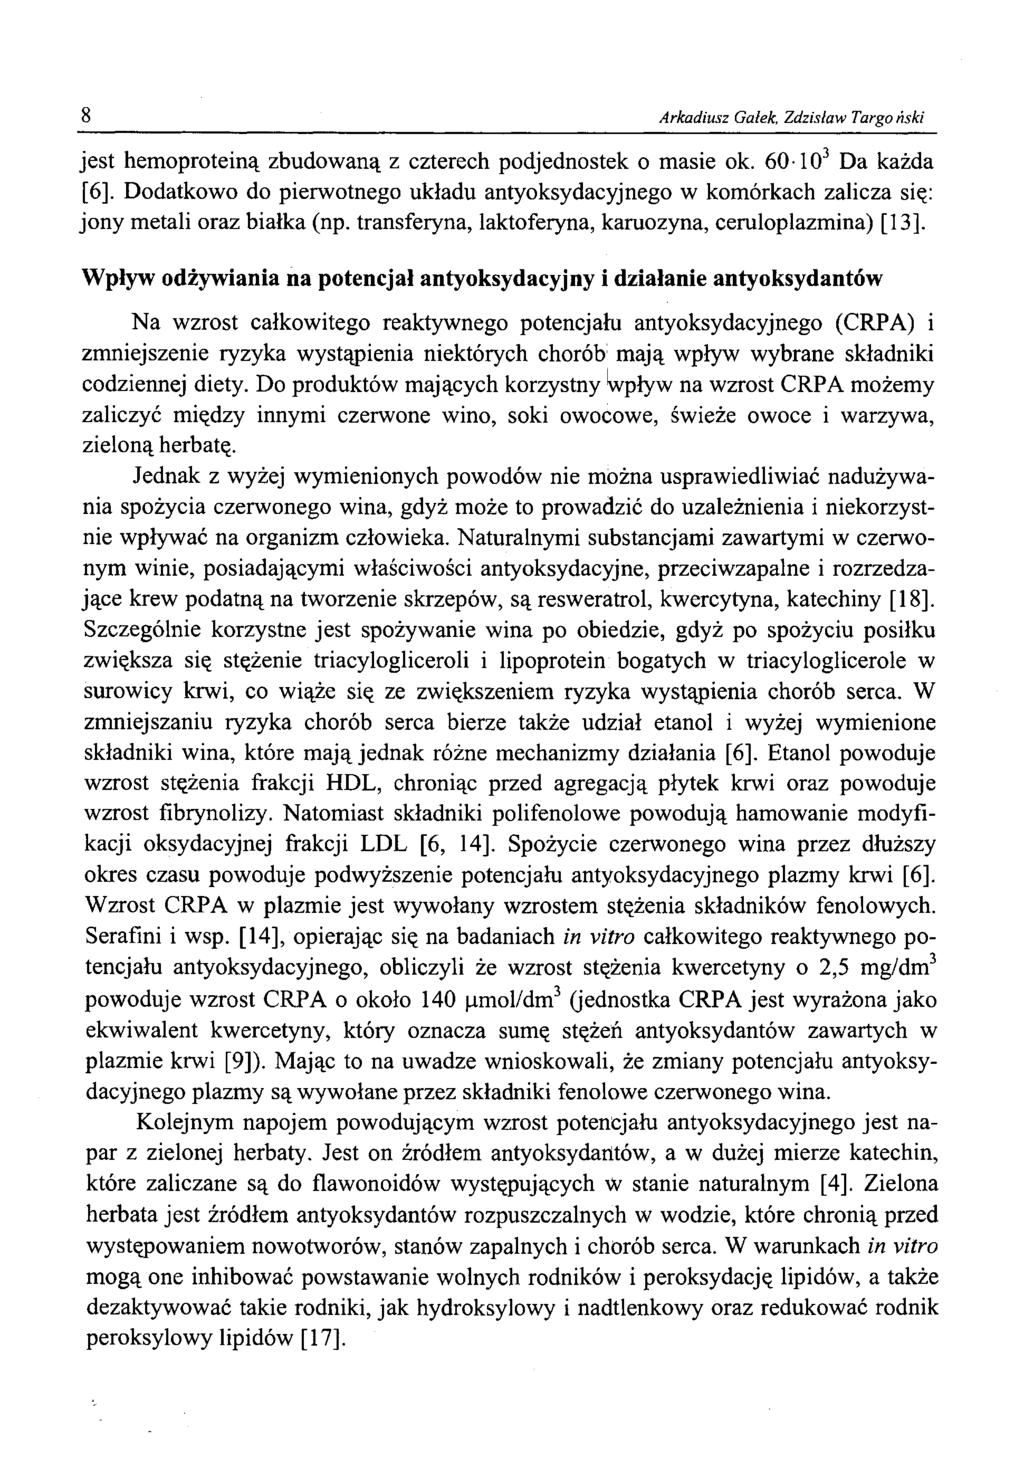 Arkadiusz Galek, Zdzisław Targoński jest hemoproteiną zbudowaną z czterech podjednostek o masie ok. 60-103 Da każda [6].